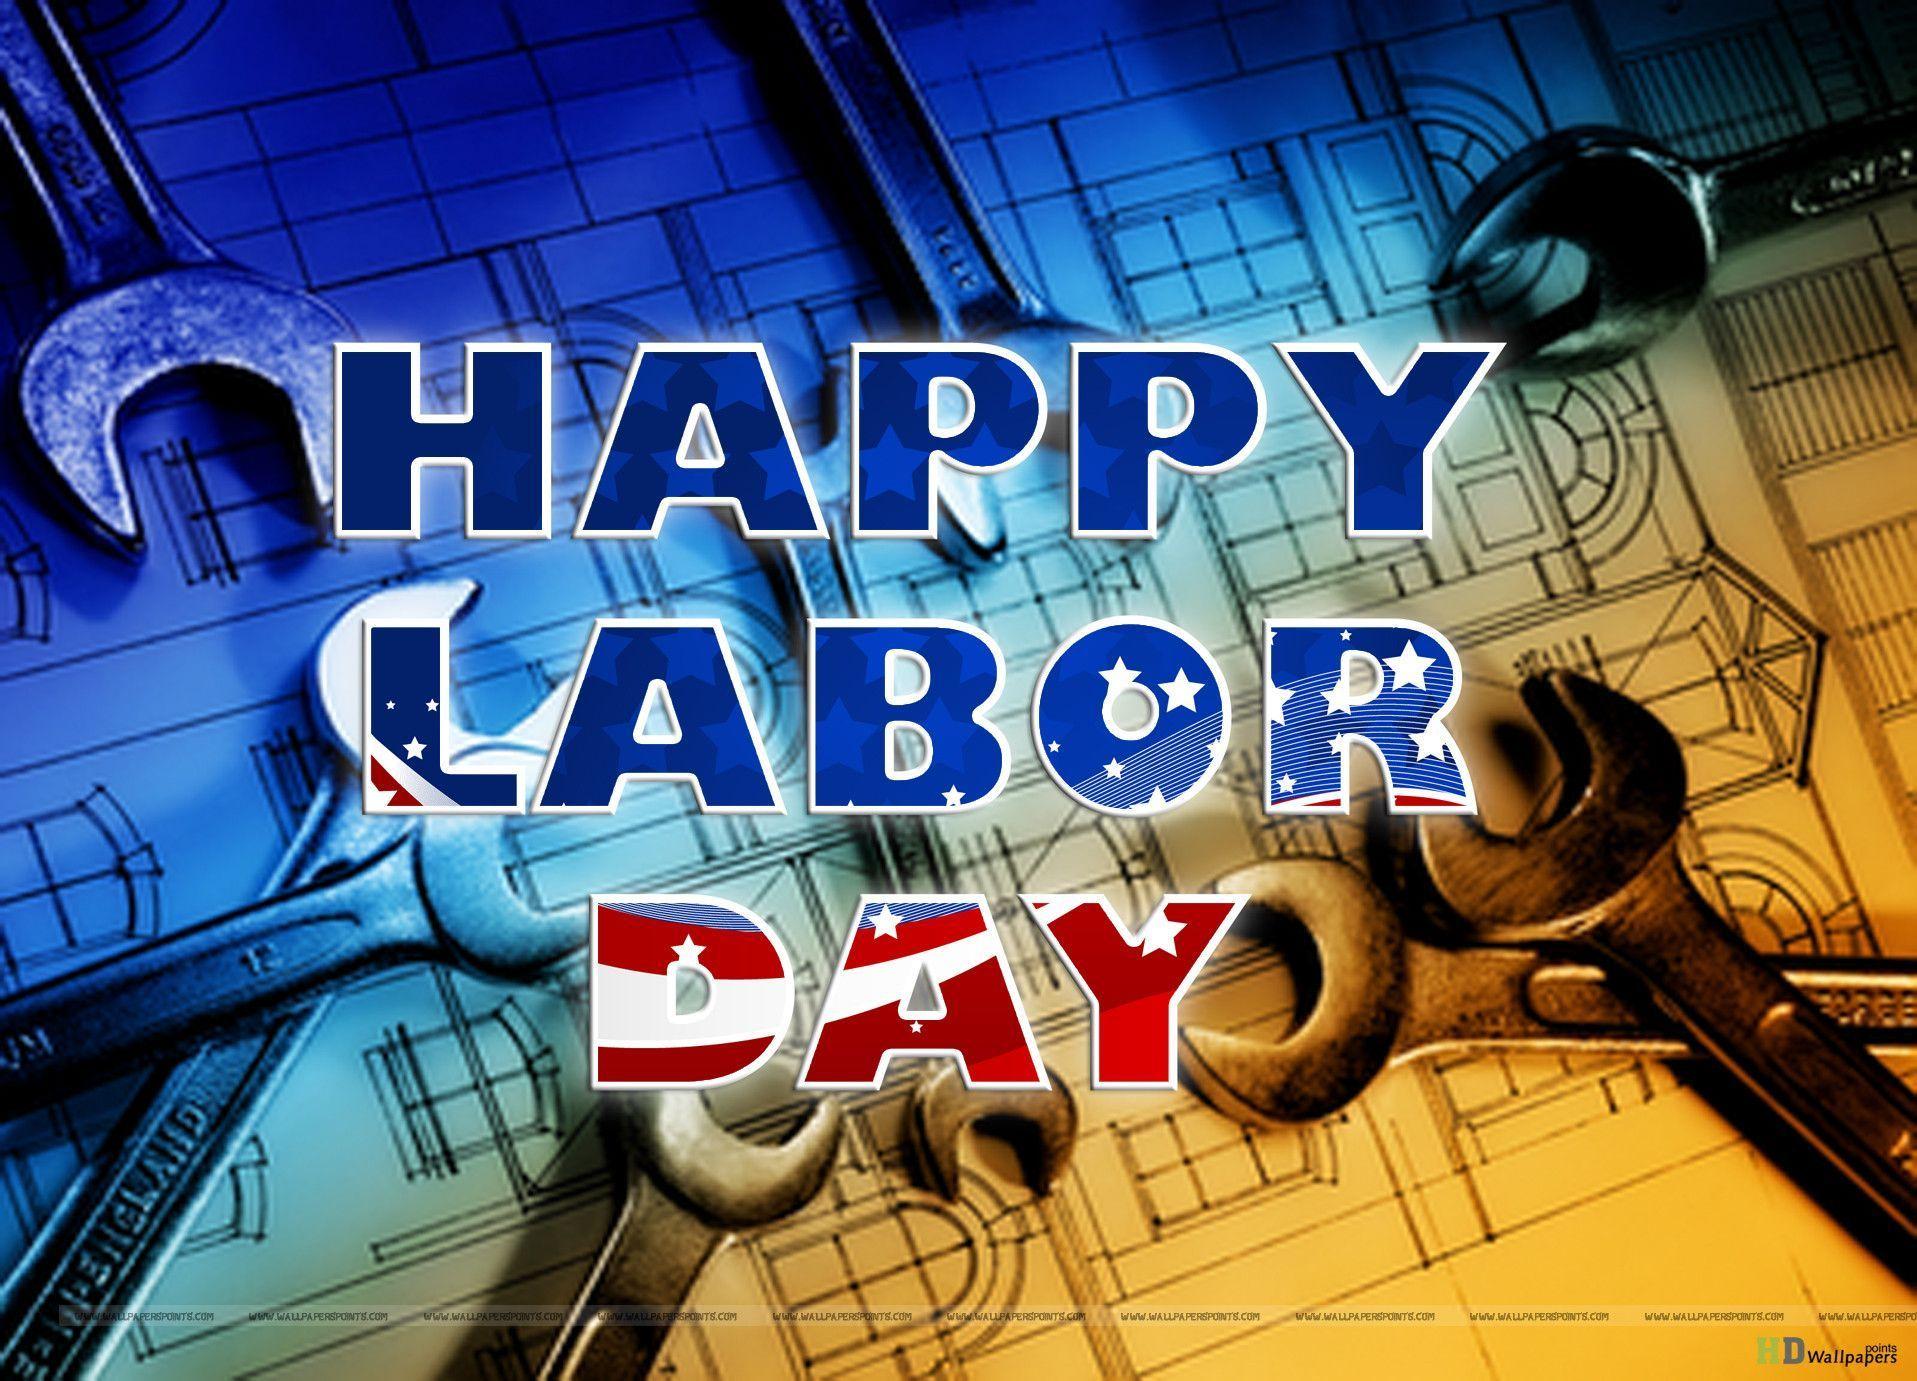 Happy Labor Day Wallpaper